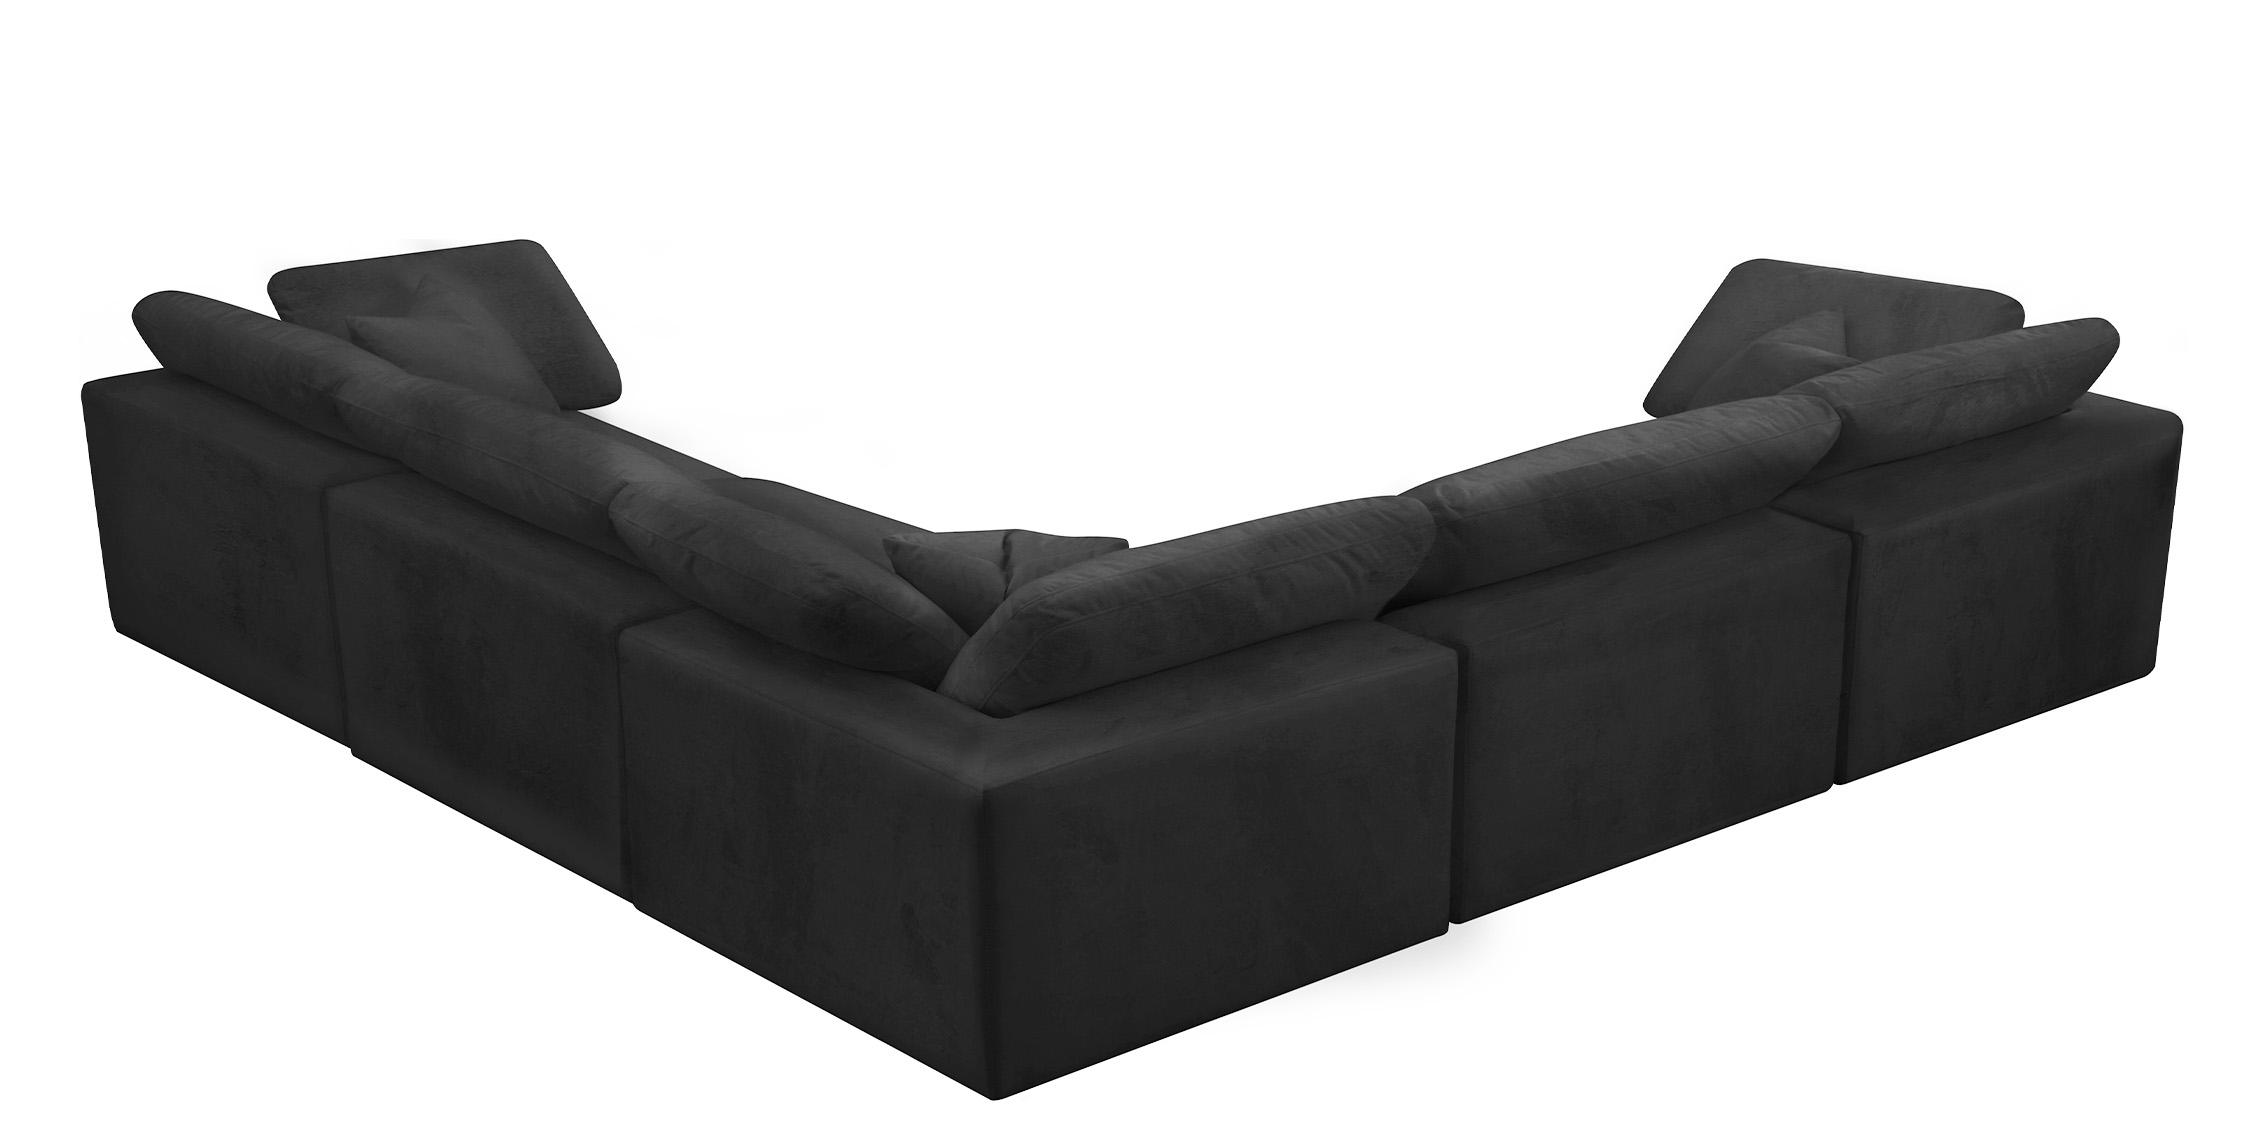 

    
Meridian Furniture 634Black-Sec5C Modular Sectional Sofa Black 634Black-Sec5C
